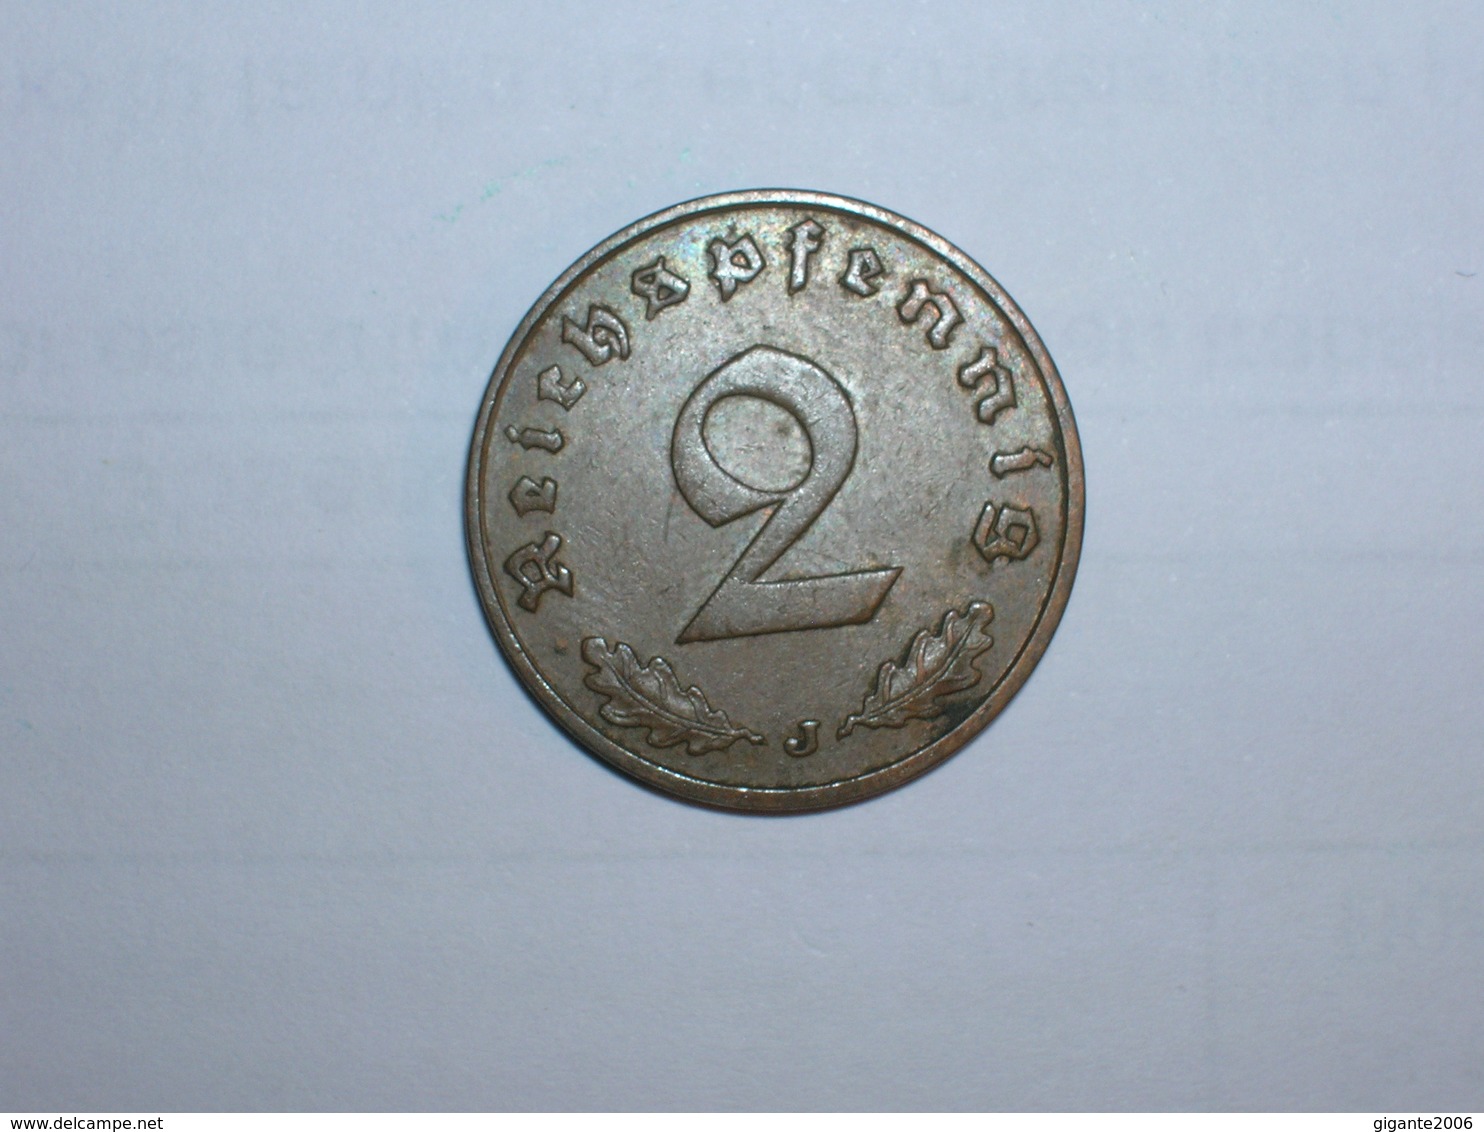 ALEMANIA- 2 PFENNIG 1938 J (946) - 2 Reichspfennig